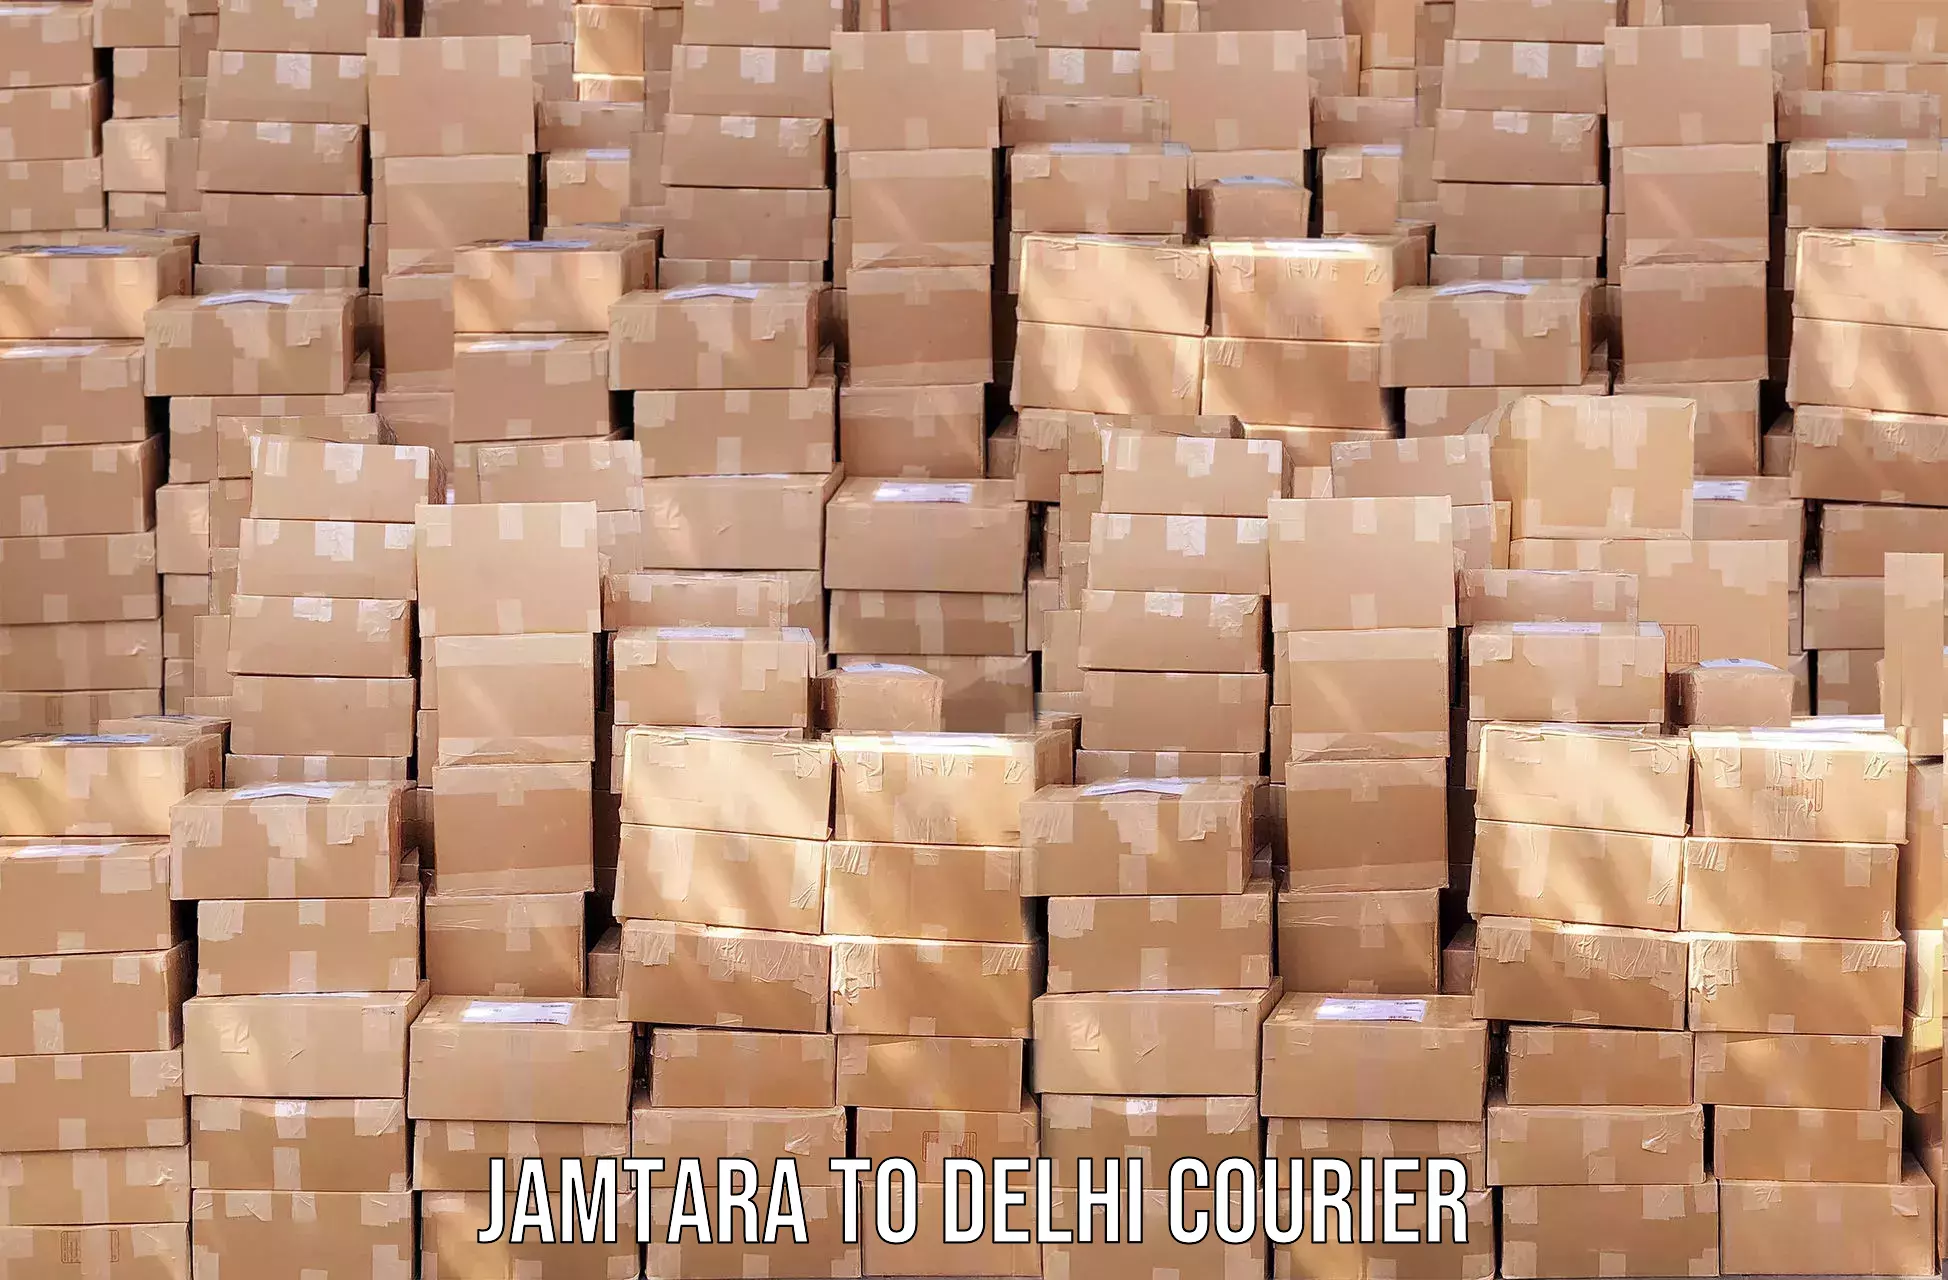 Affordable parcel service Jamtara to Sansad Marg